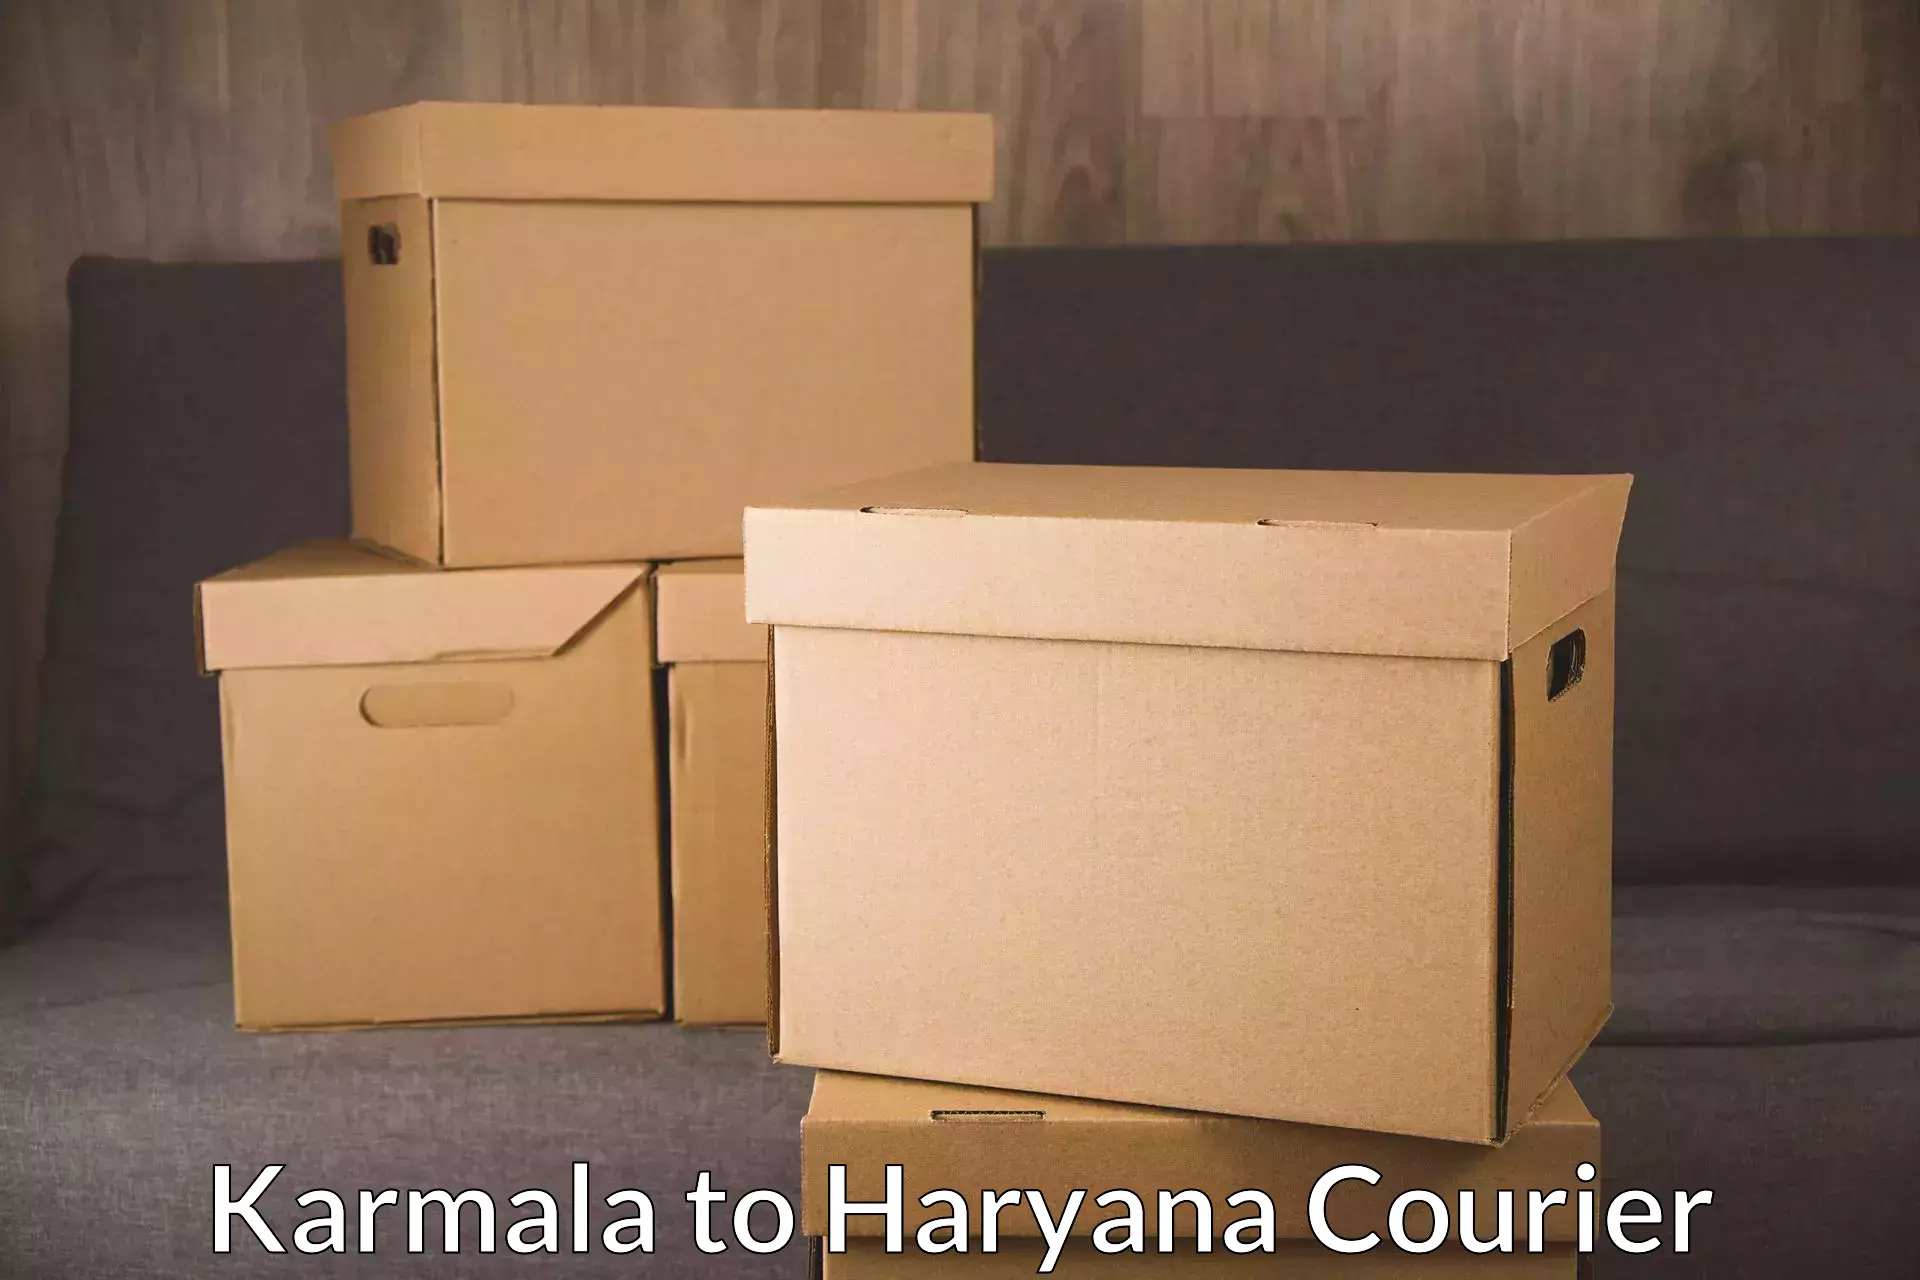 24-hour courier service Karmala to Charkhari